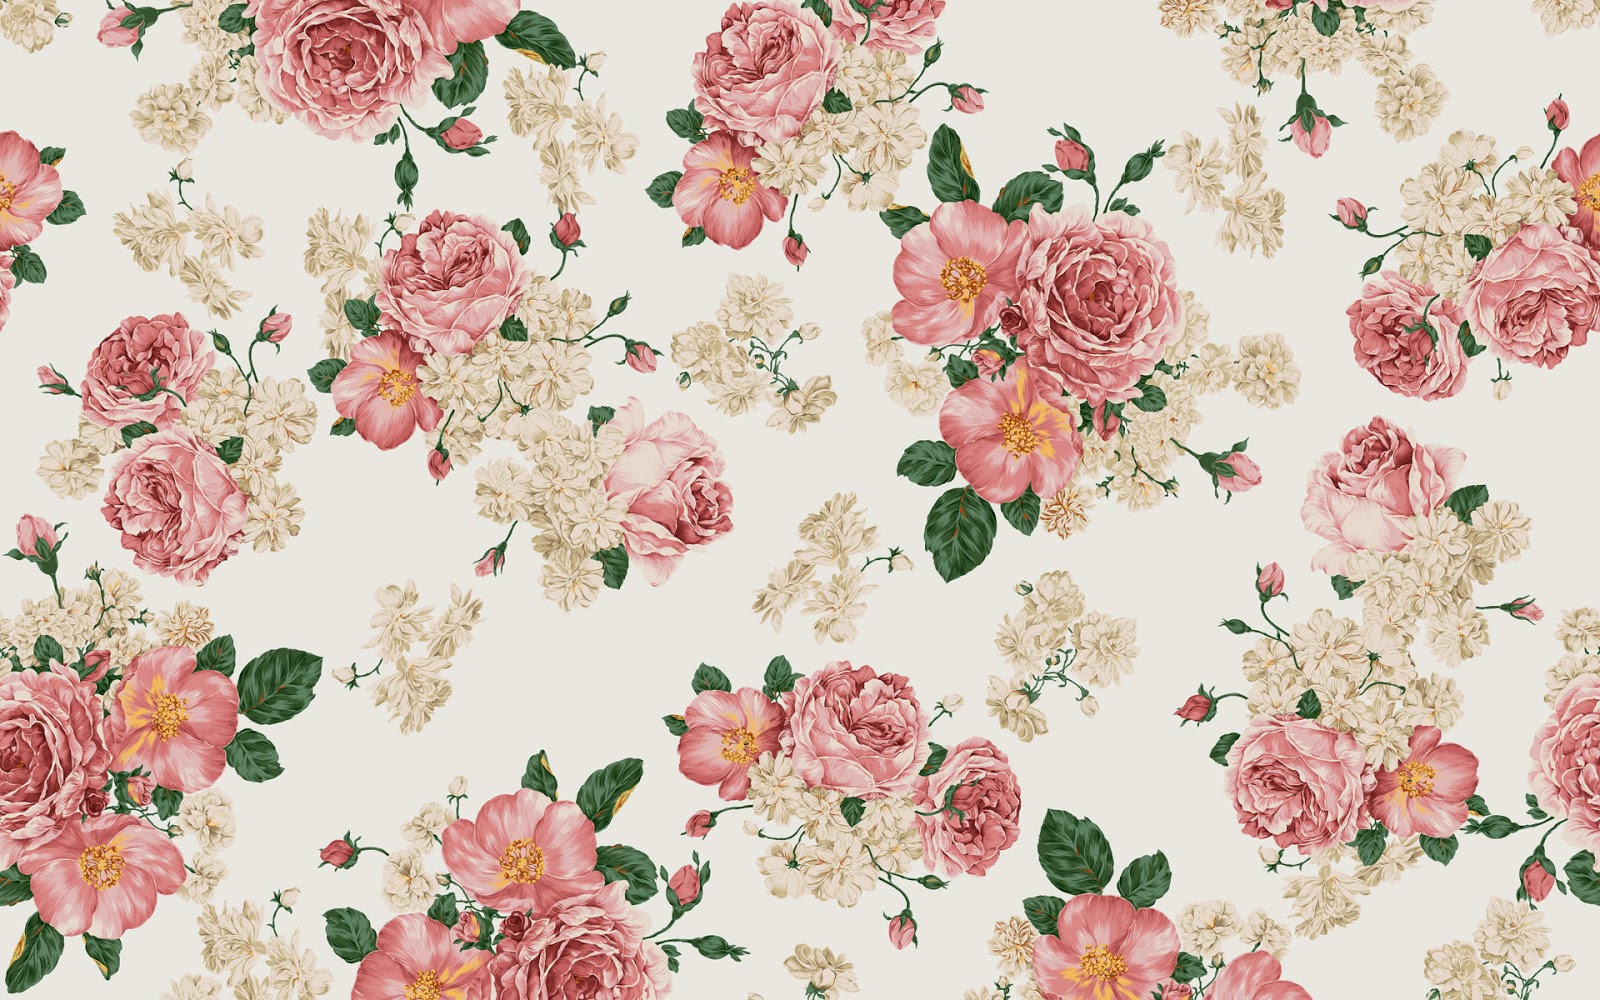 floral print wallpaper,pink,floral design,pattern,wallpaper,garden roses